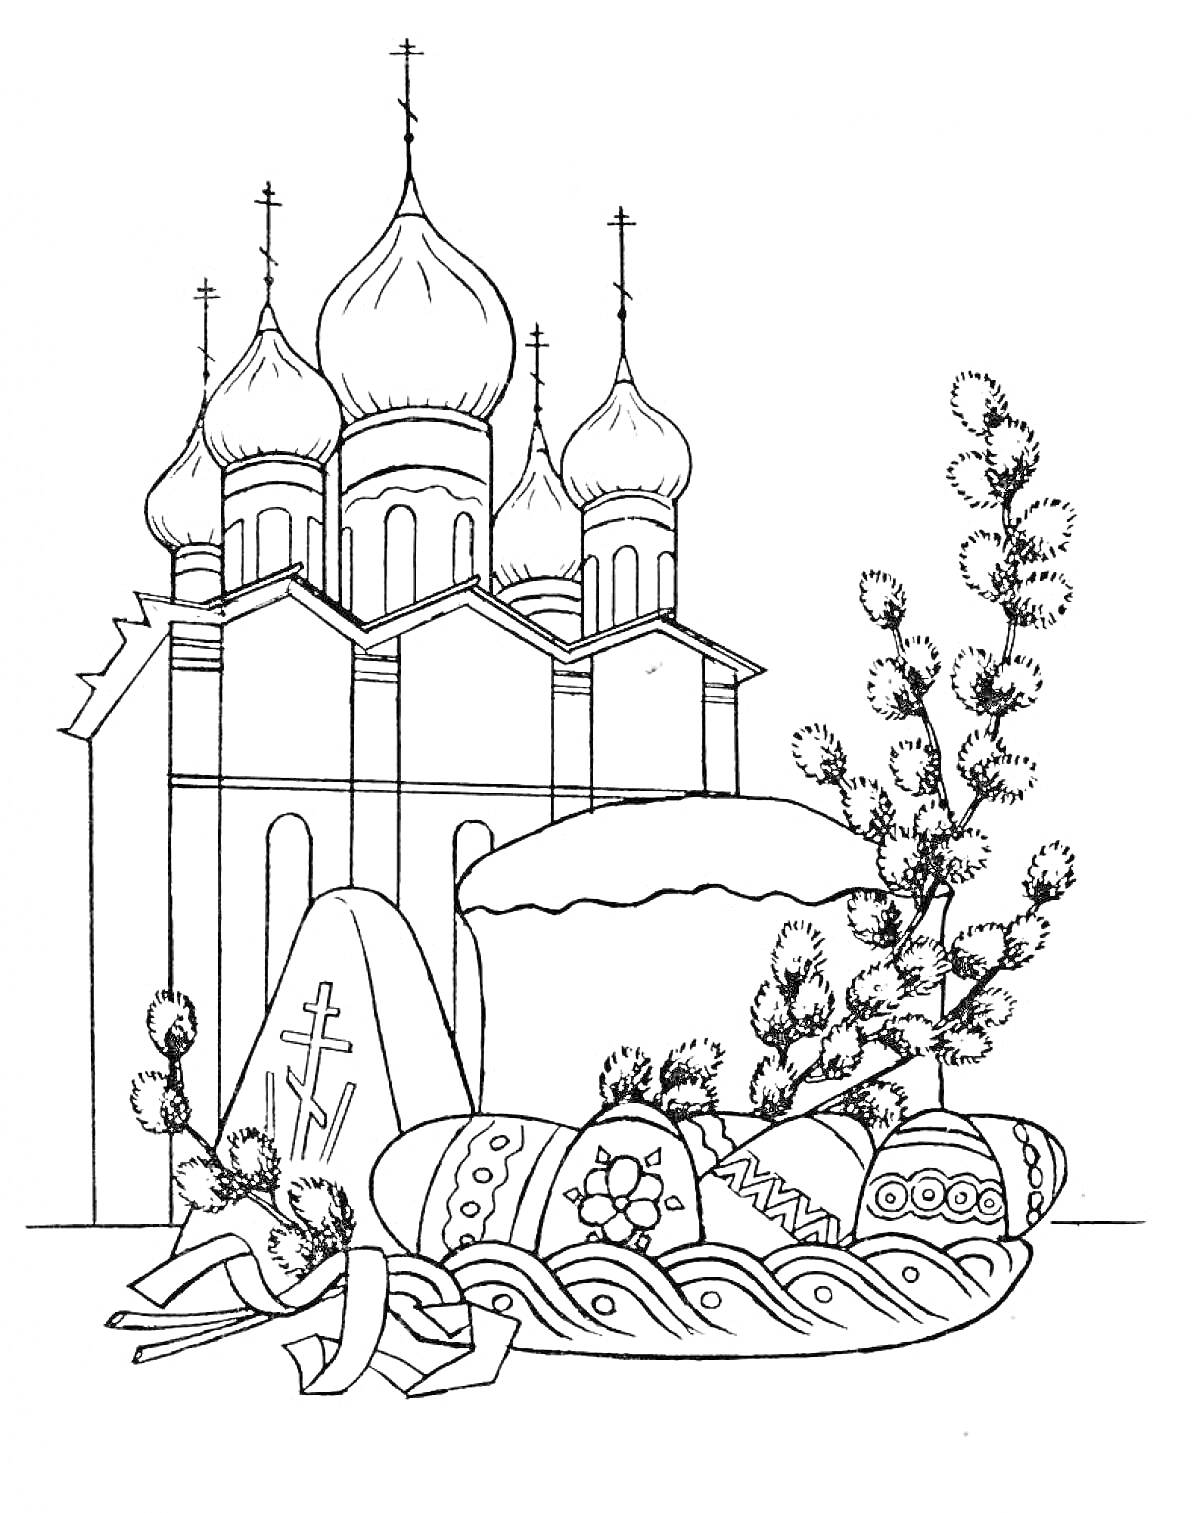 Пасхальный натюрморт с храмом, куличом и крашеными яйцами